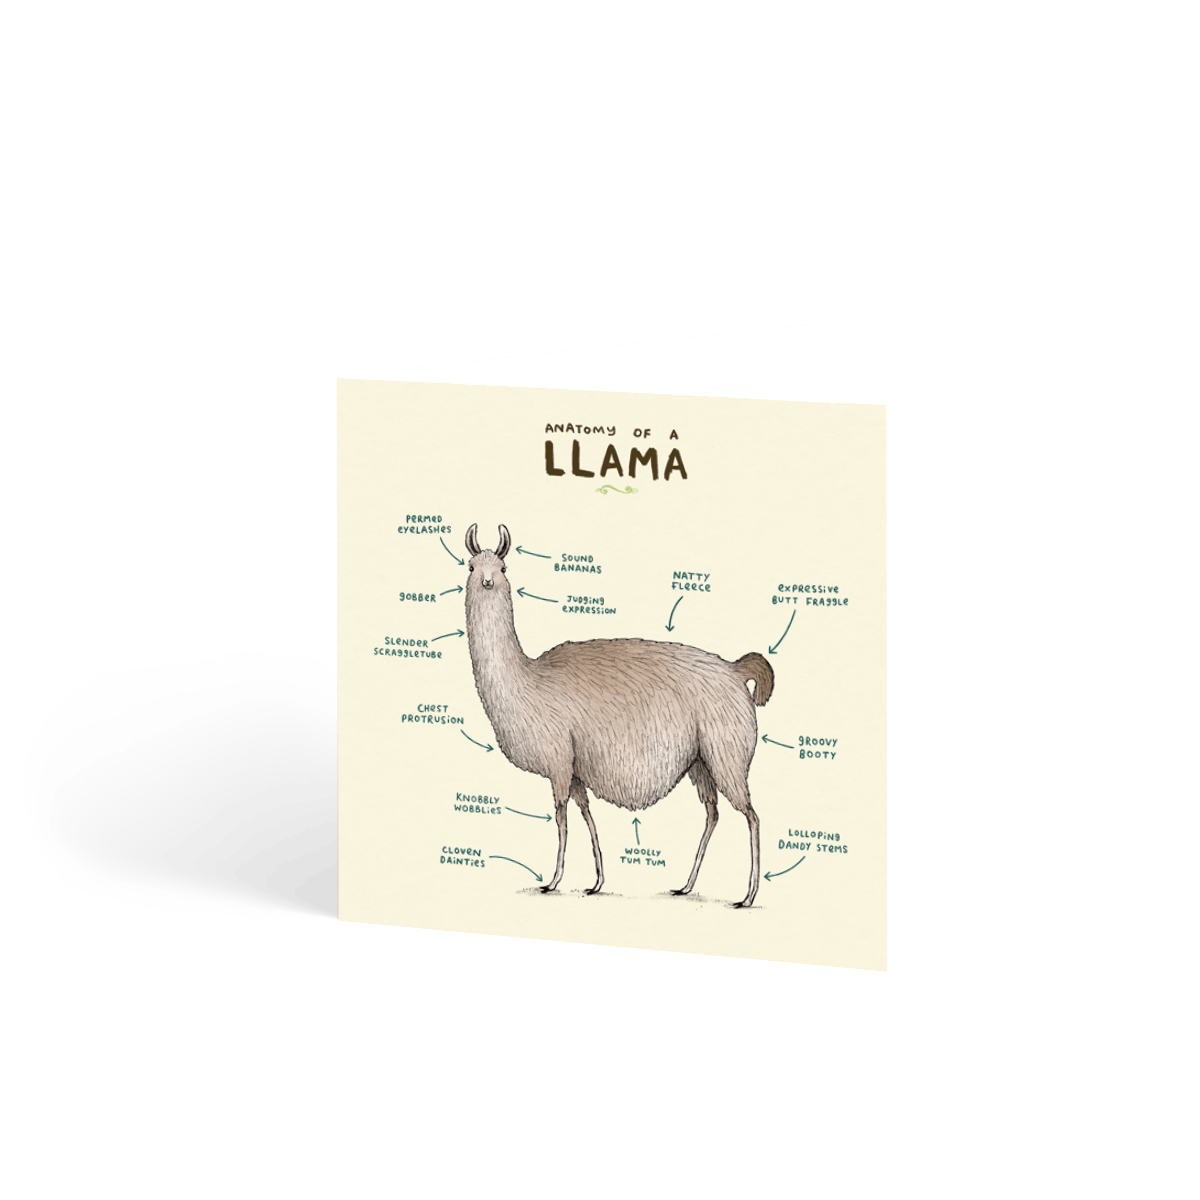 Anatomy of a Llama